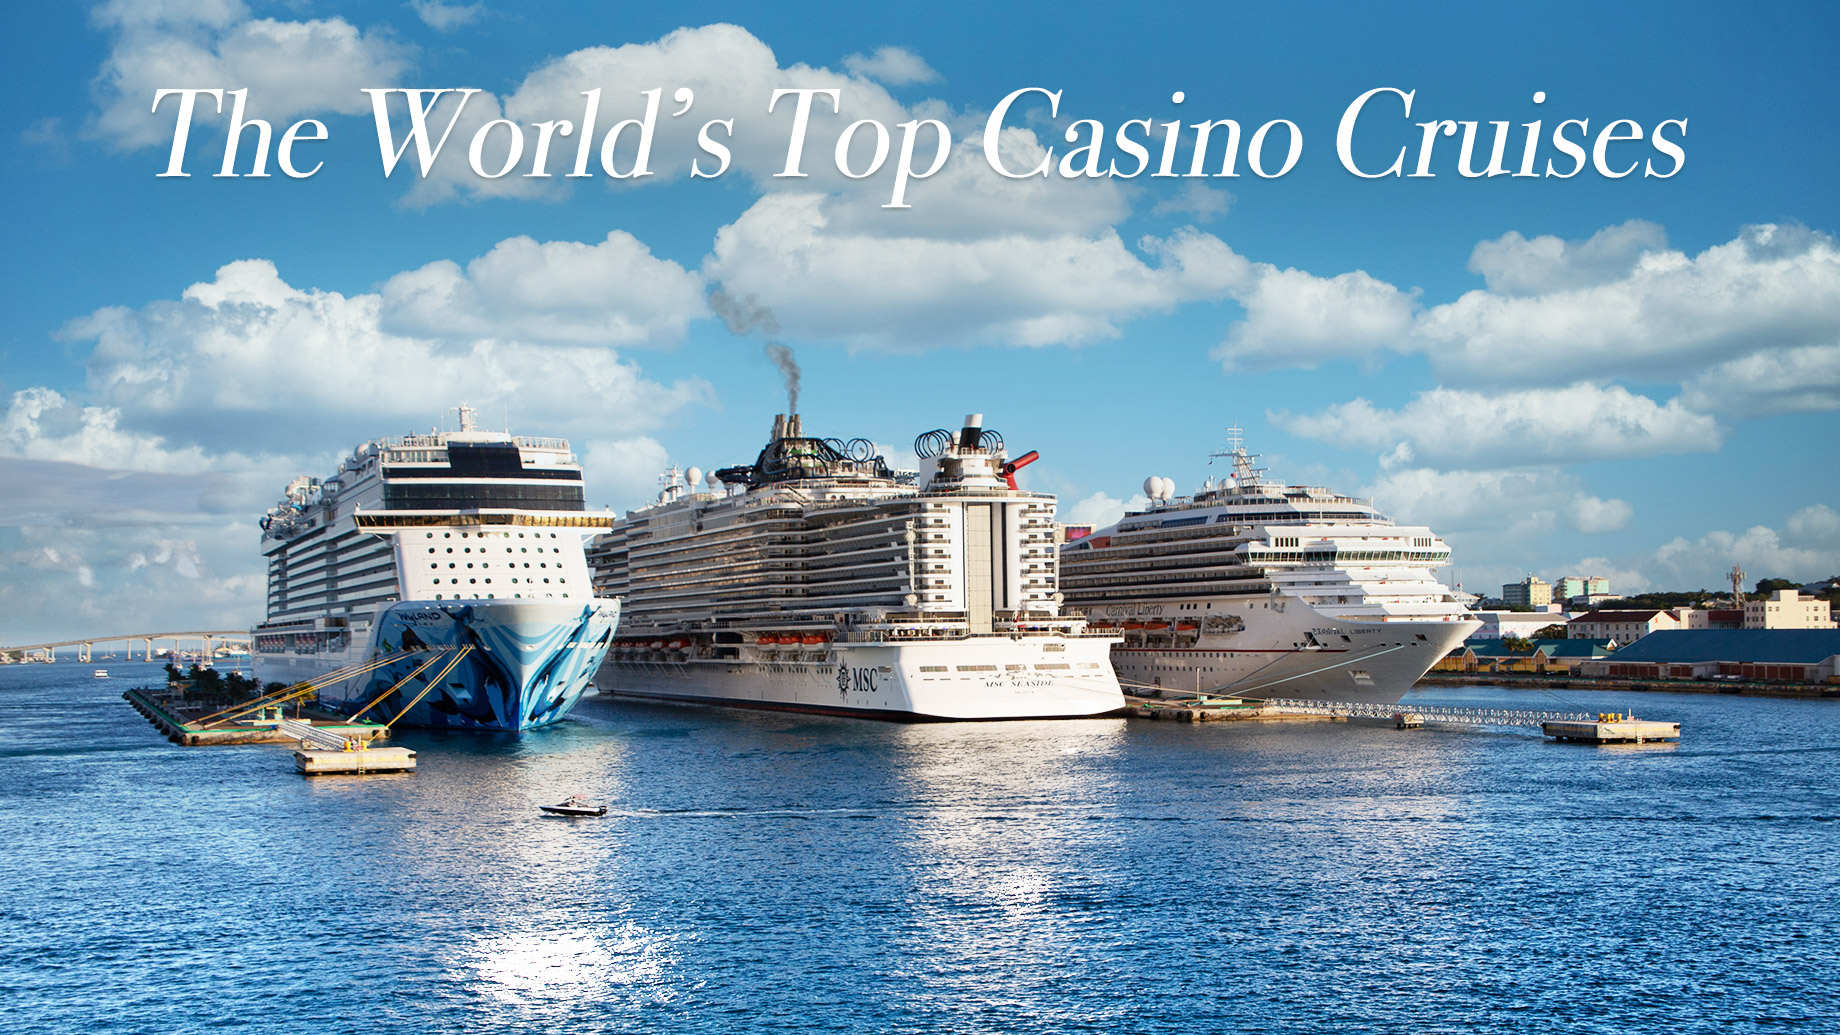 The World’s Top Casino Cruises